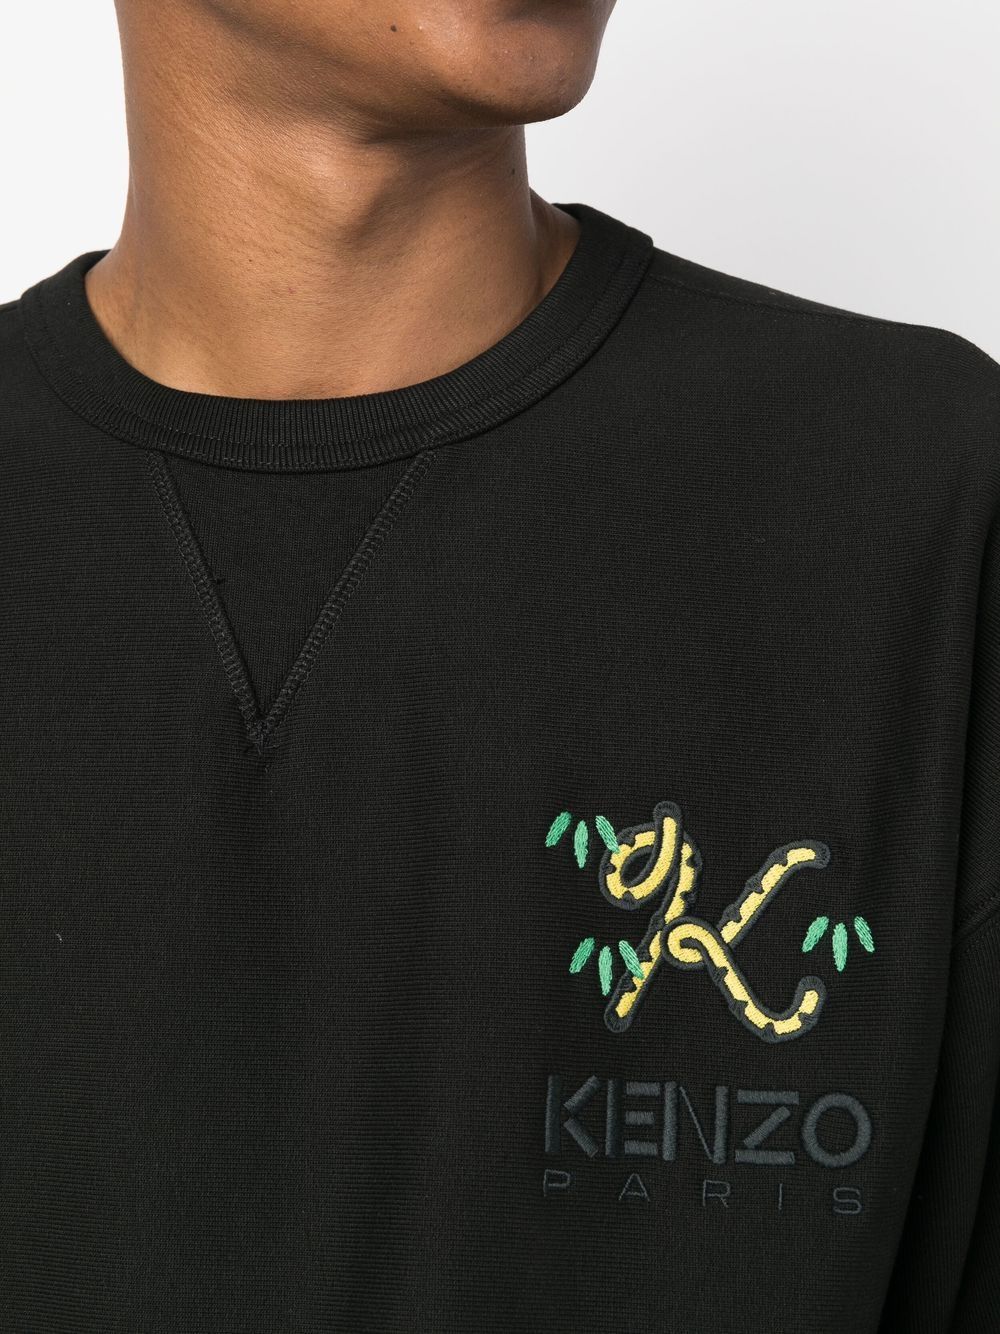 【おすすめスウェット】KENZO Tail Logo Sweat Shirt